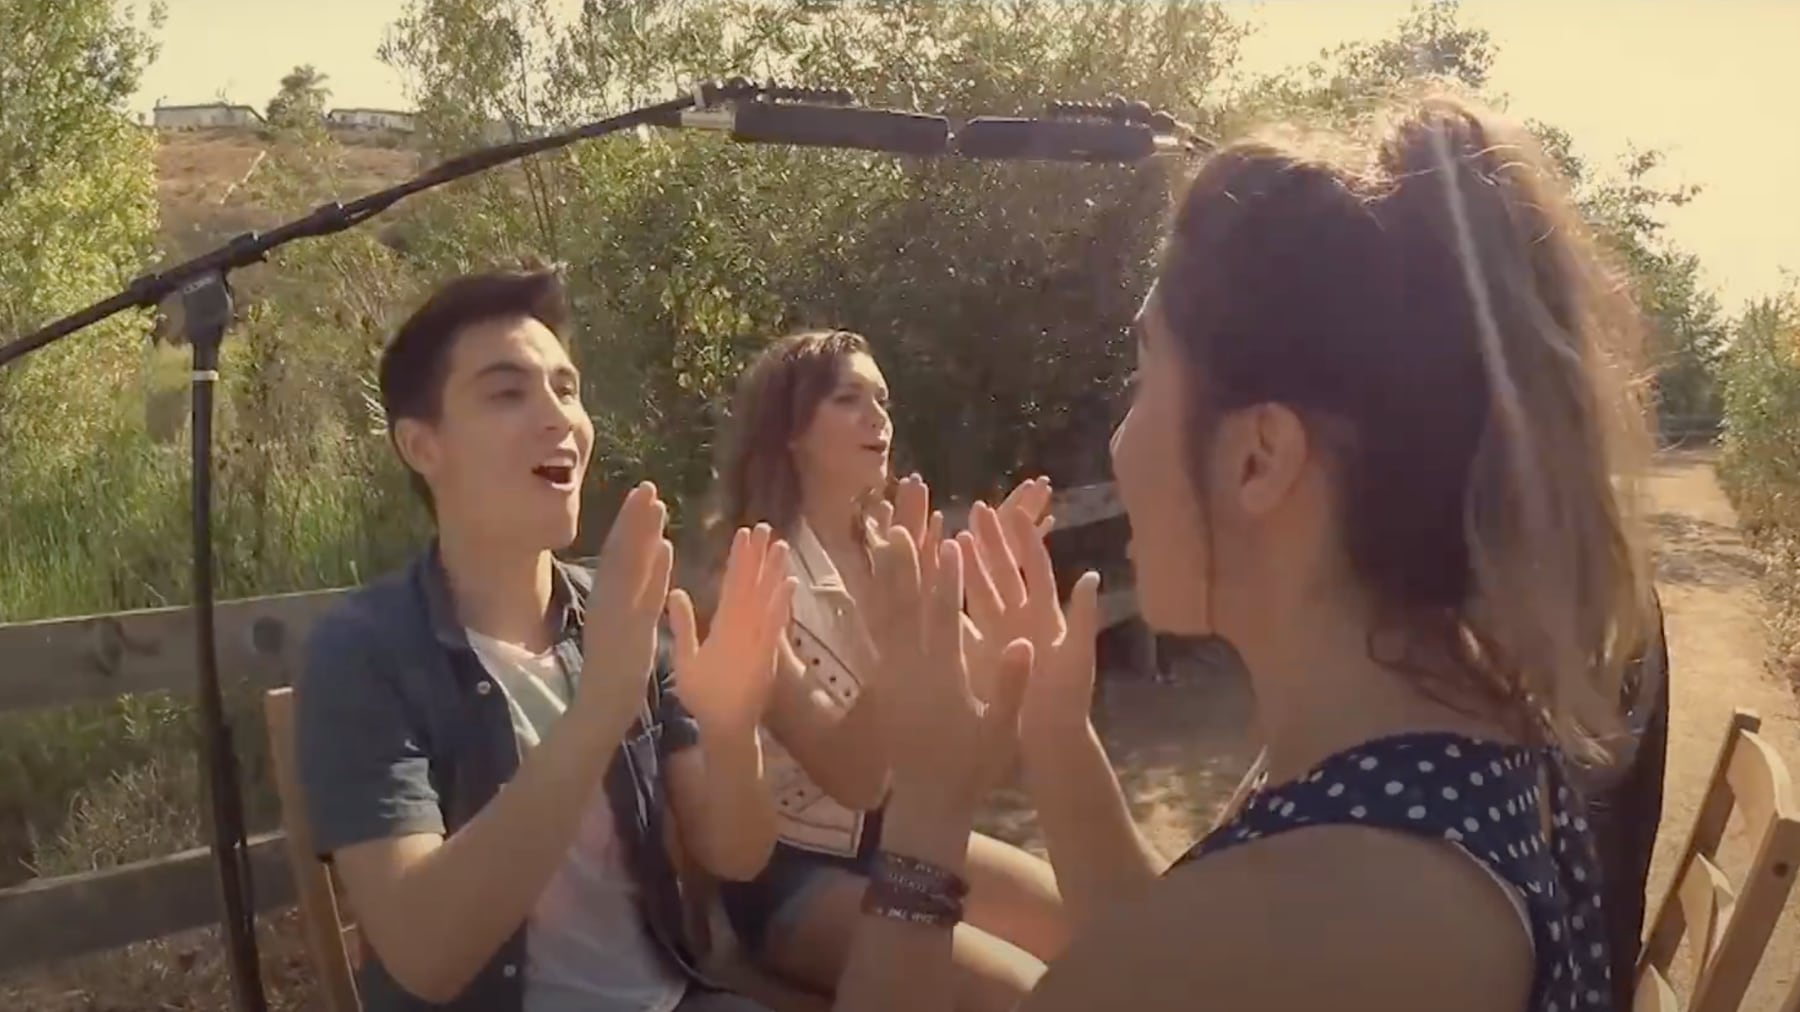 Skjermbilde fra video - 4 ungdommer synger og klapper